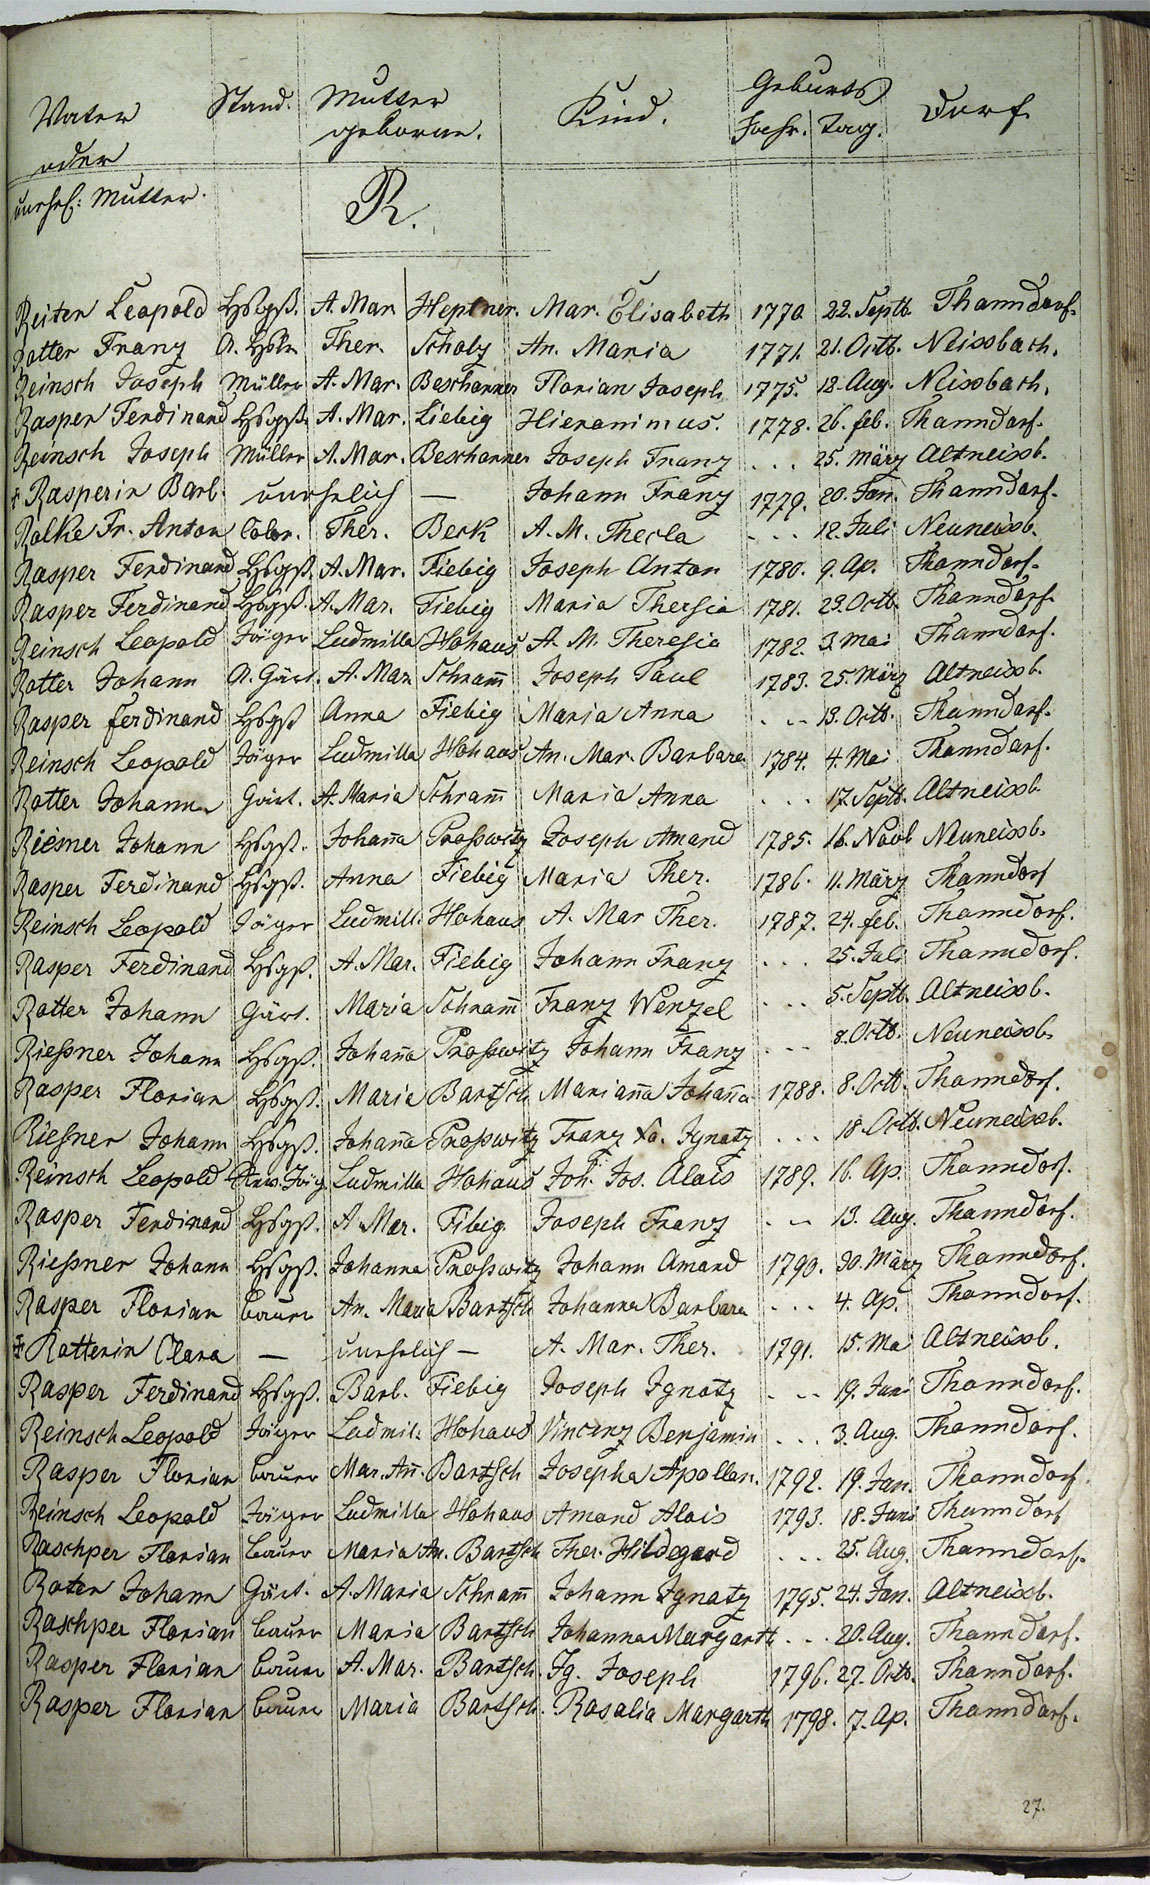 Taufregister 1770 - 1889 Seite 130